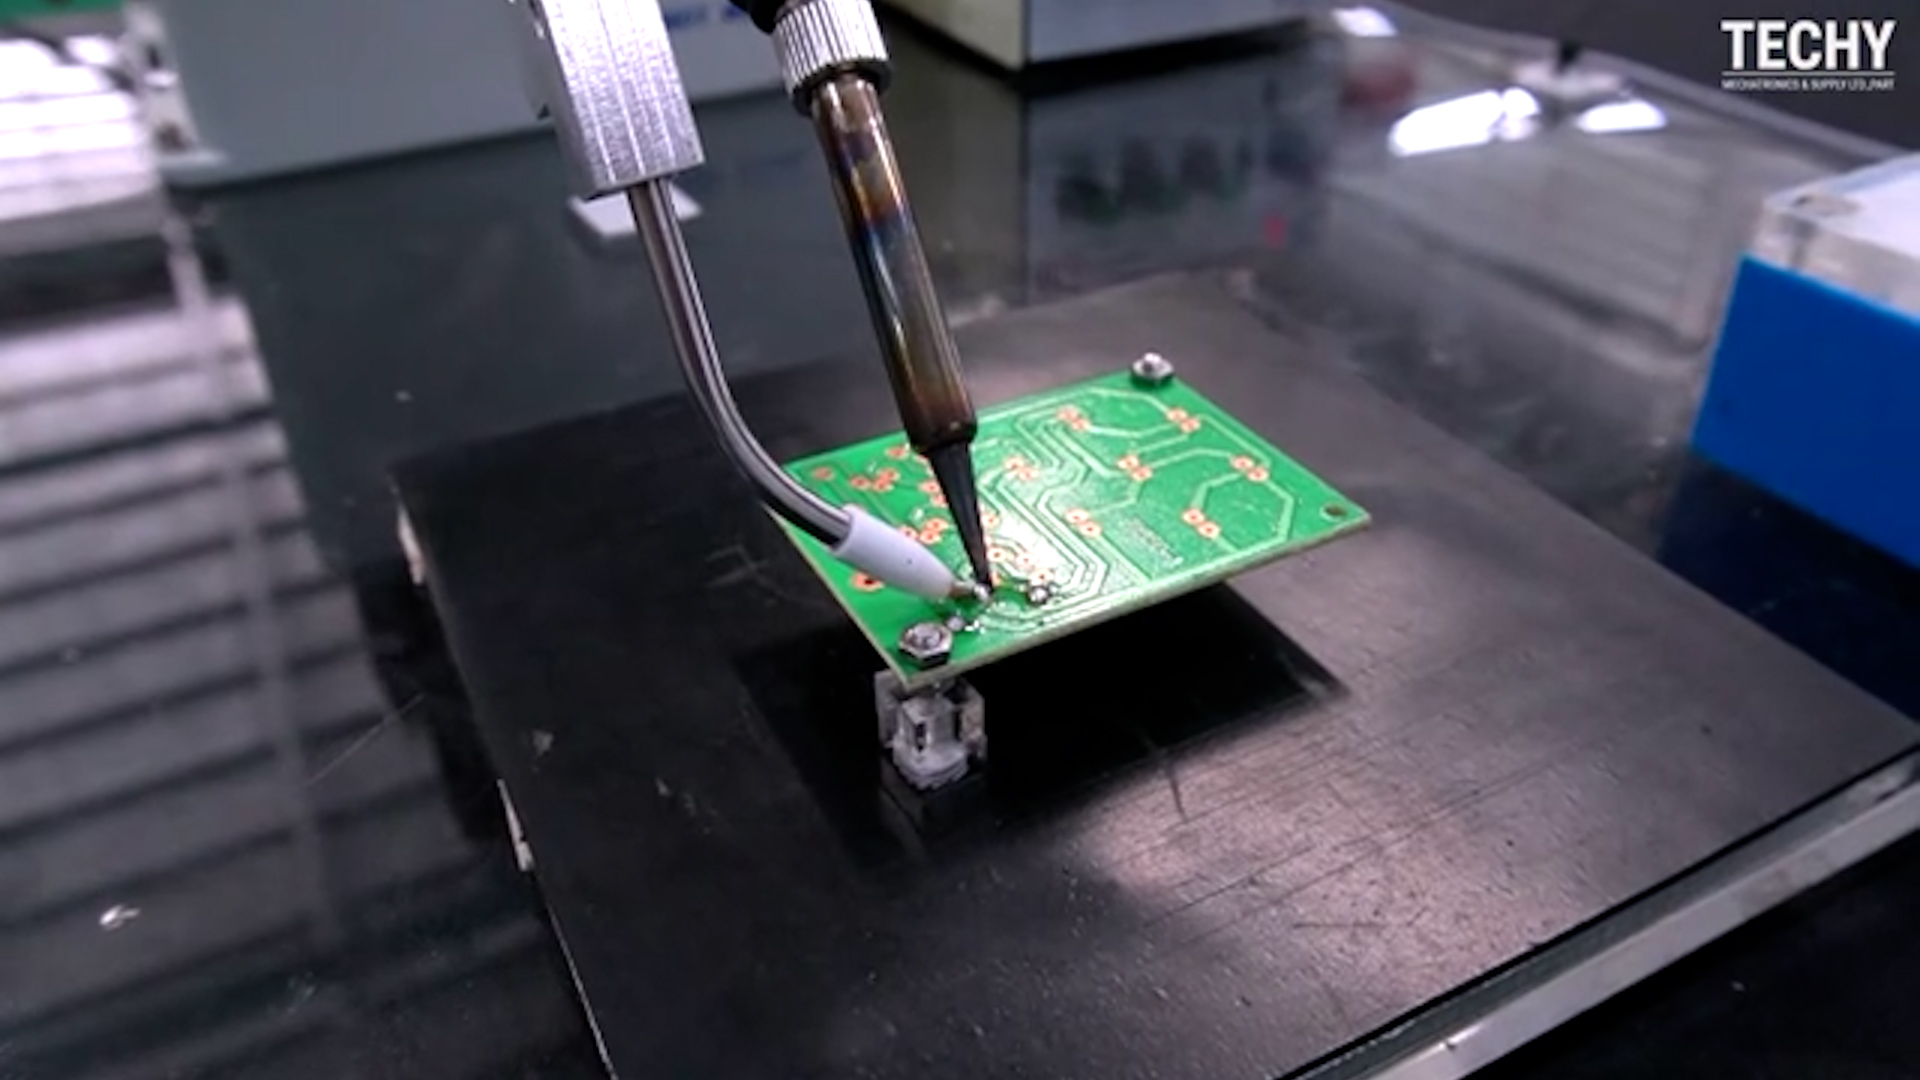 Tin Soldering on Printed Circuit Board